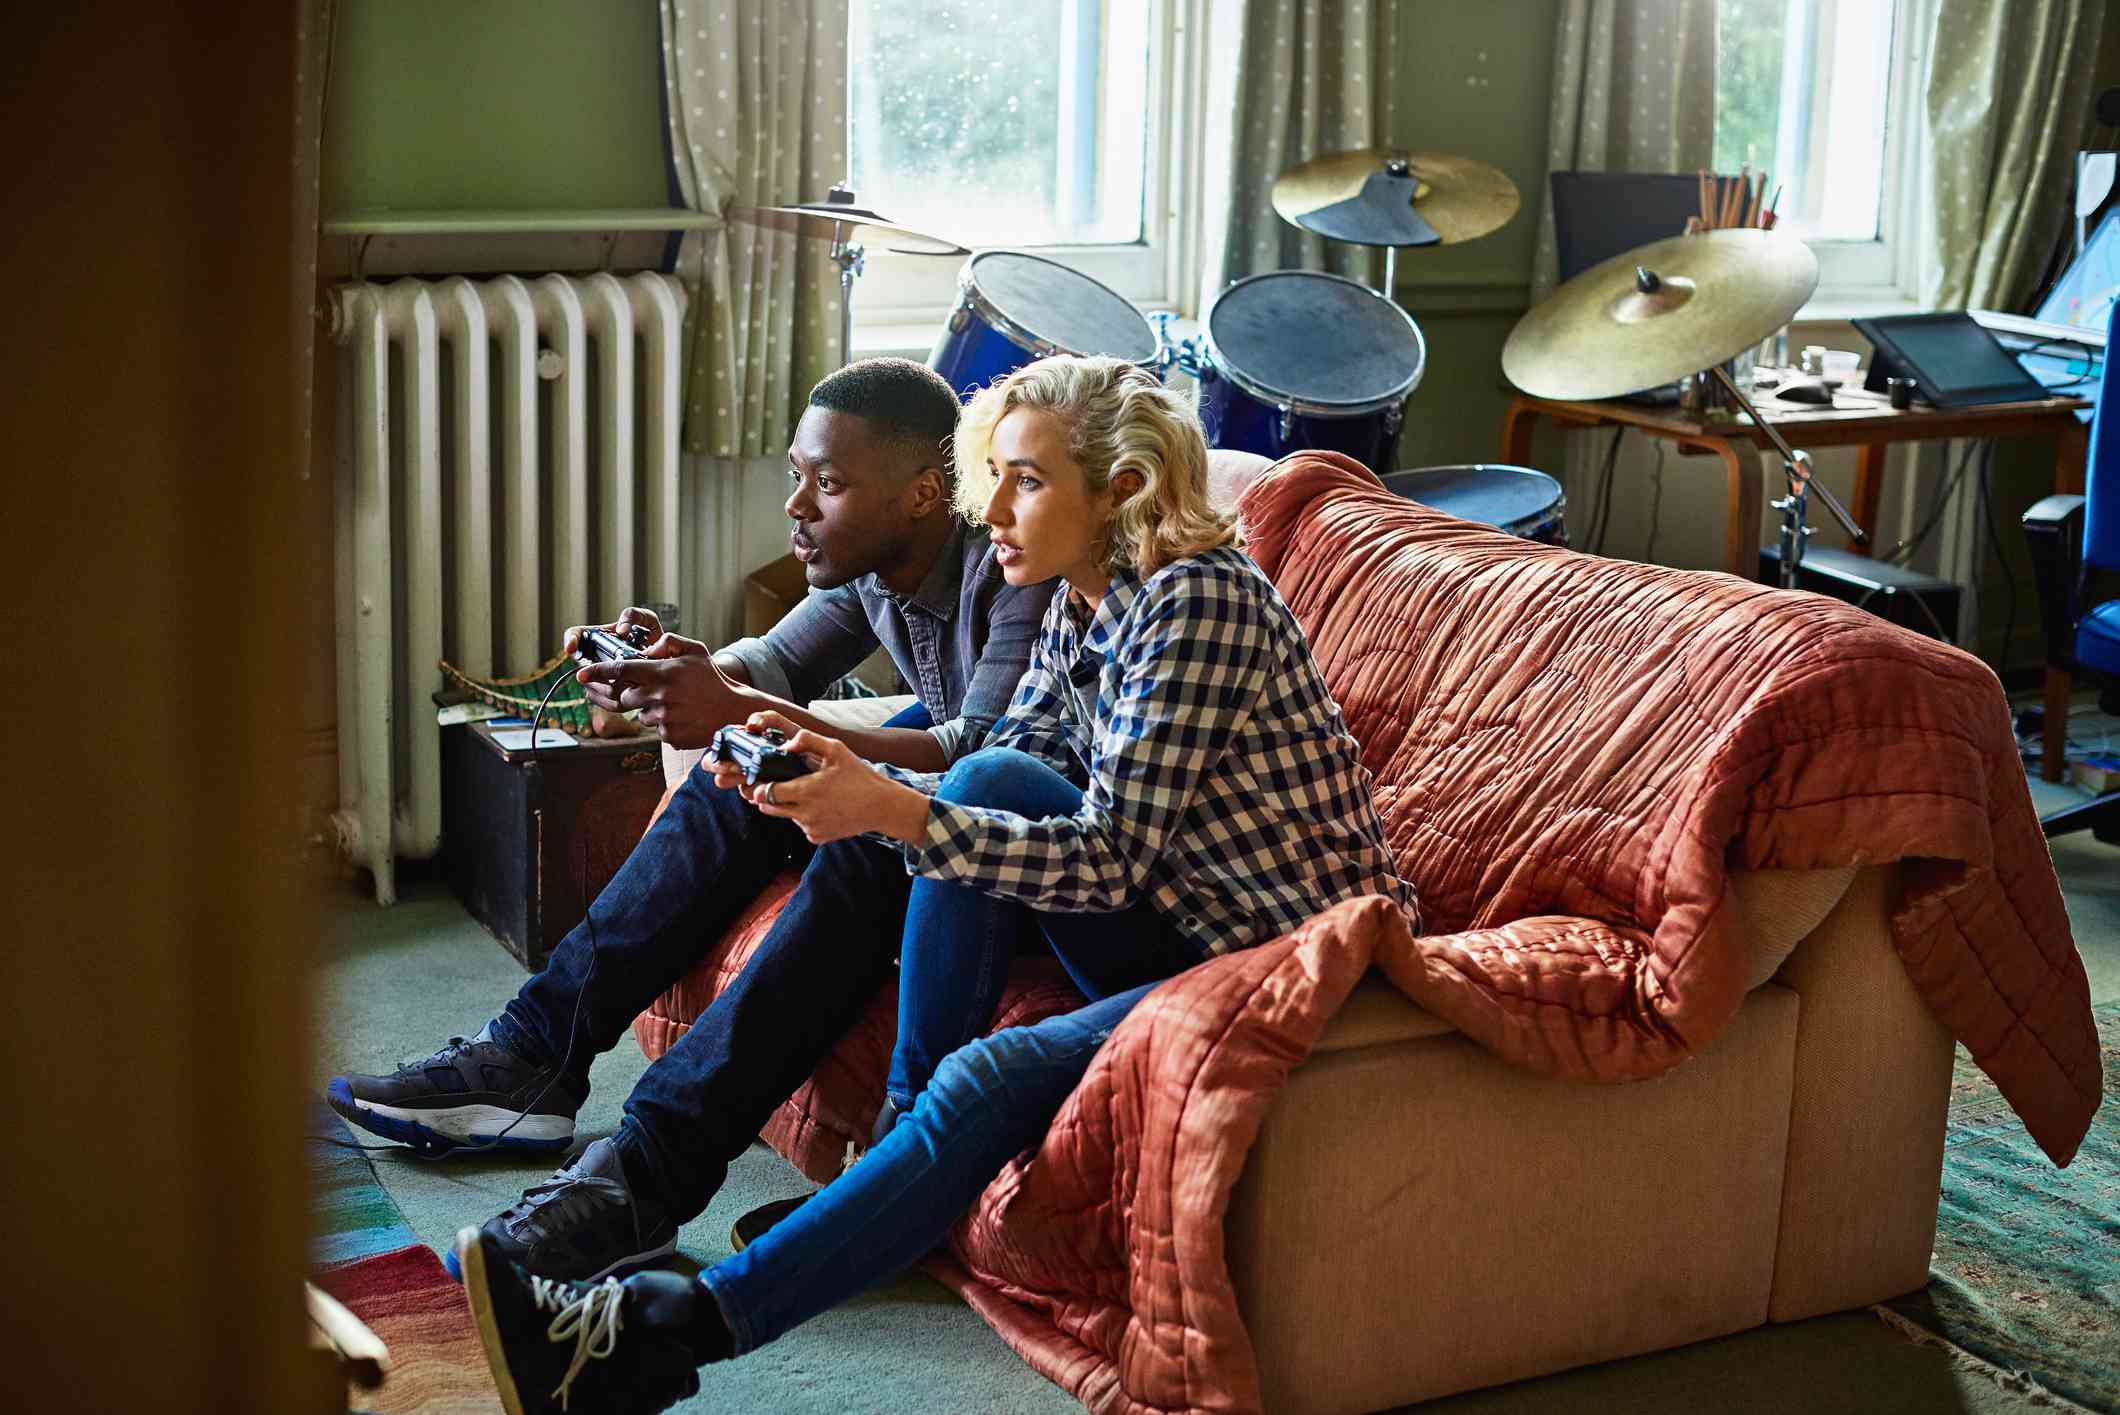 Twee jonge volwassenen die console-videogames spelen, zittend op een bank in een klein appartement.